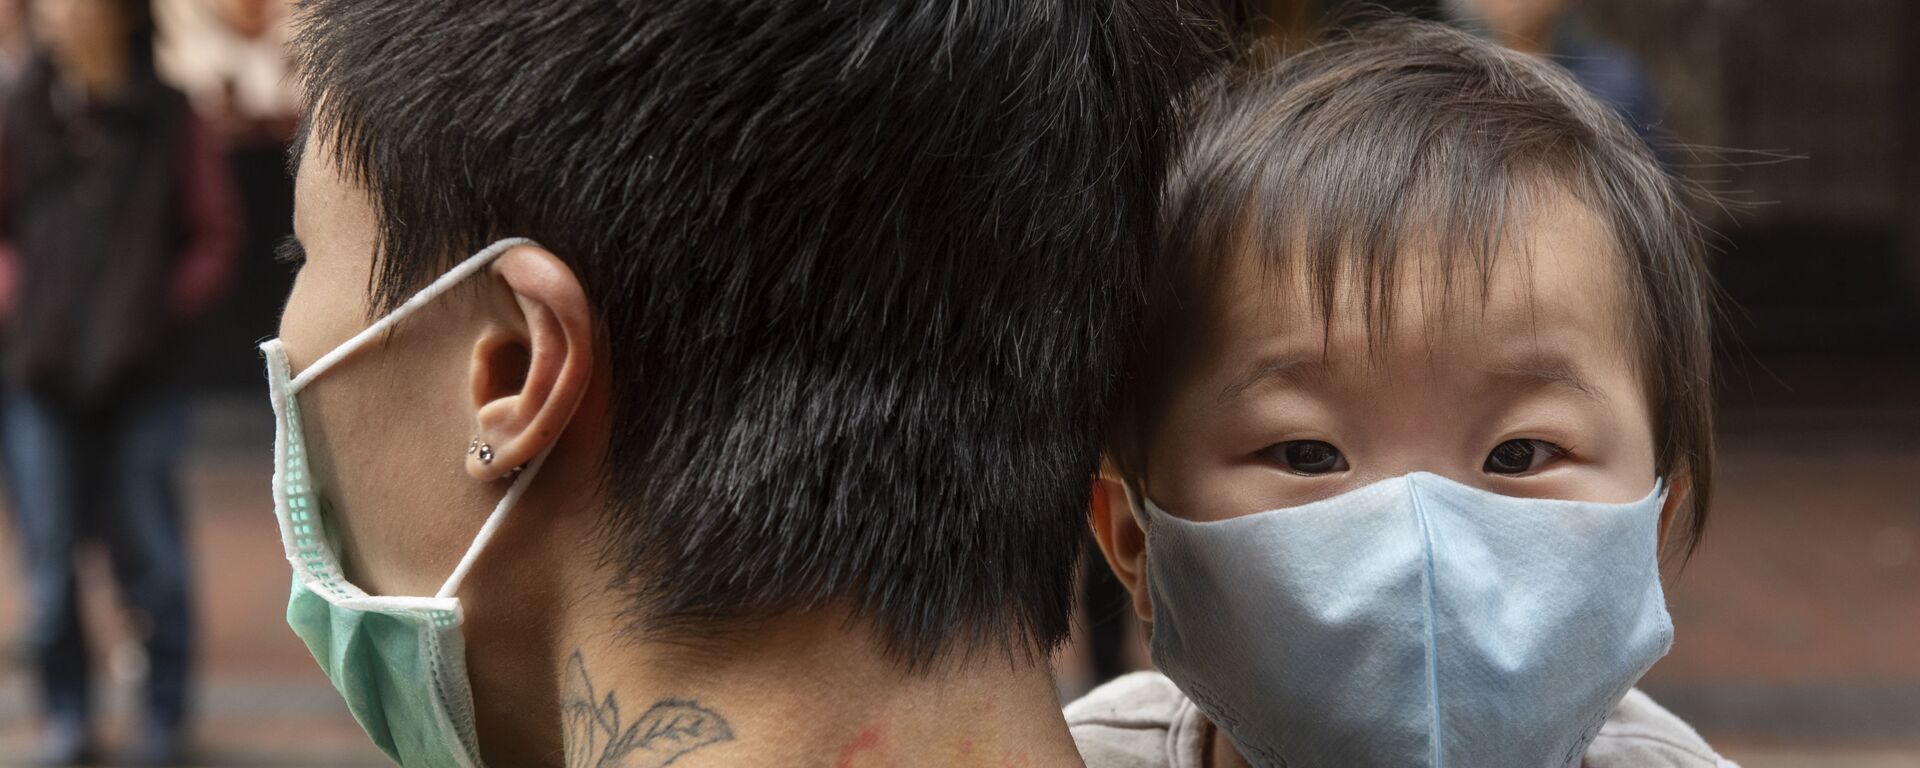 Ребенок в защитной маске на руках отца на одной из улиц в Гонконге - Sputnik Արմենիա, 1920, 22.09.2021